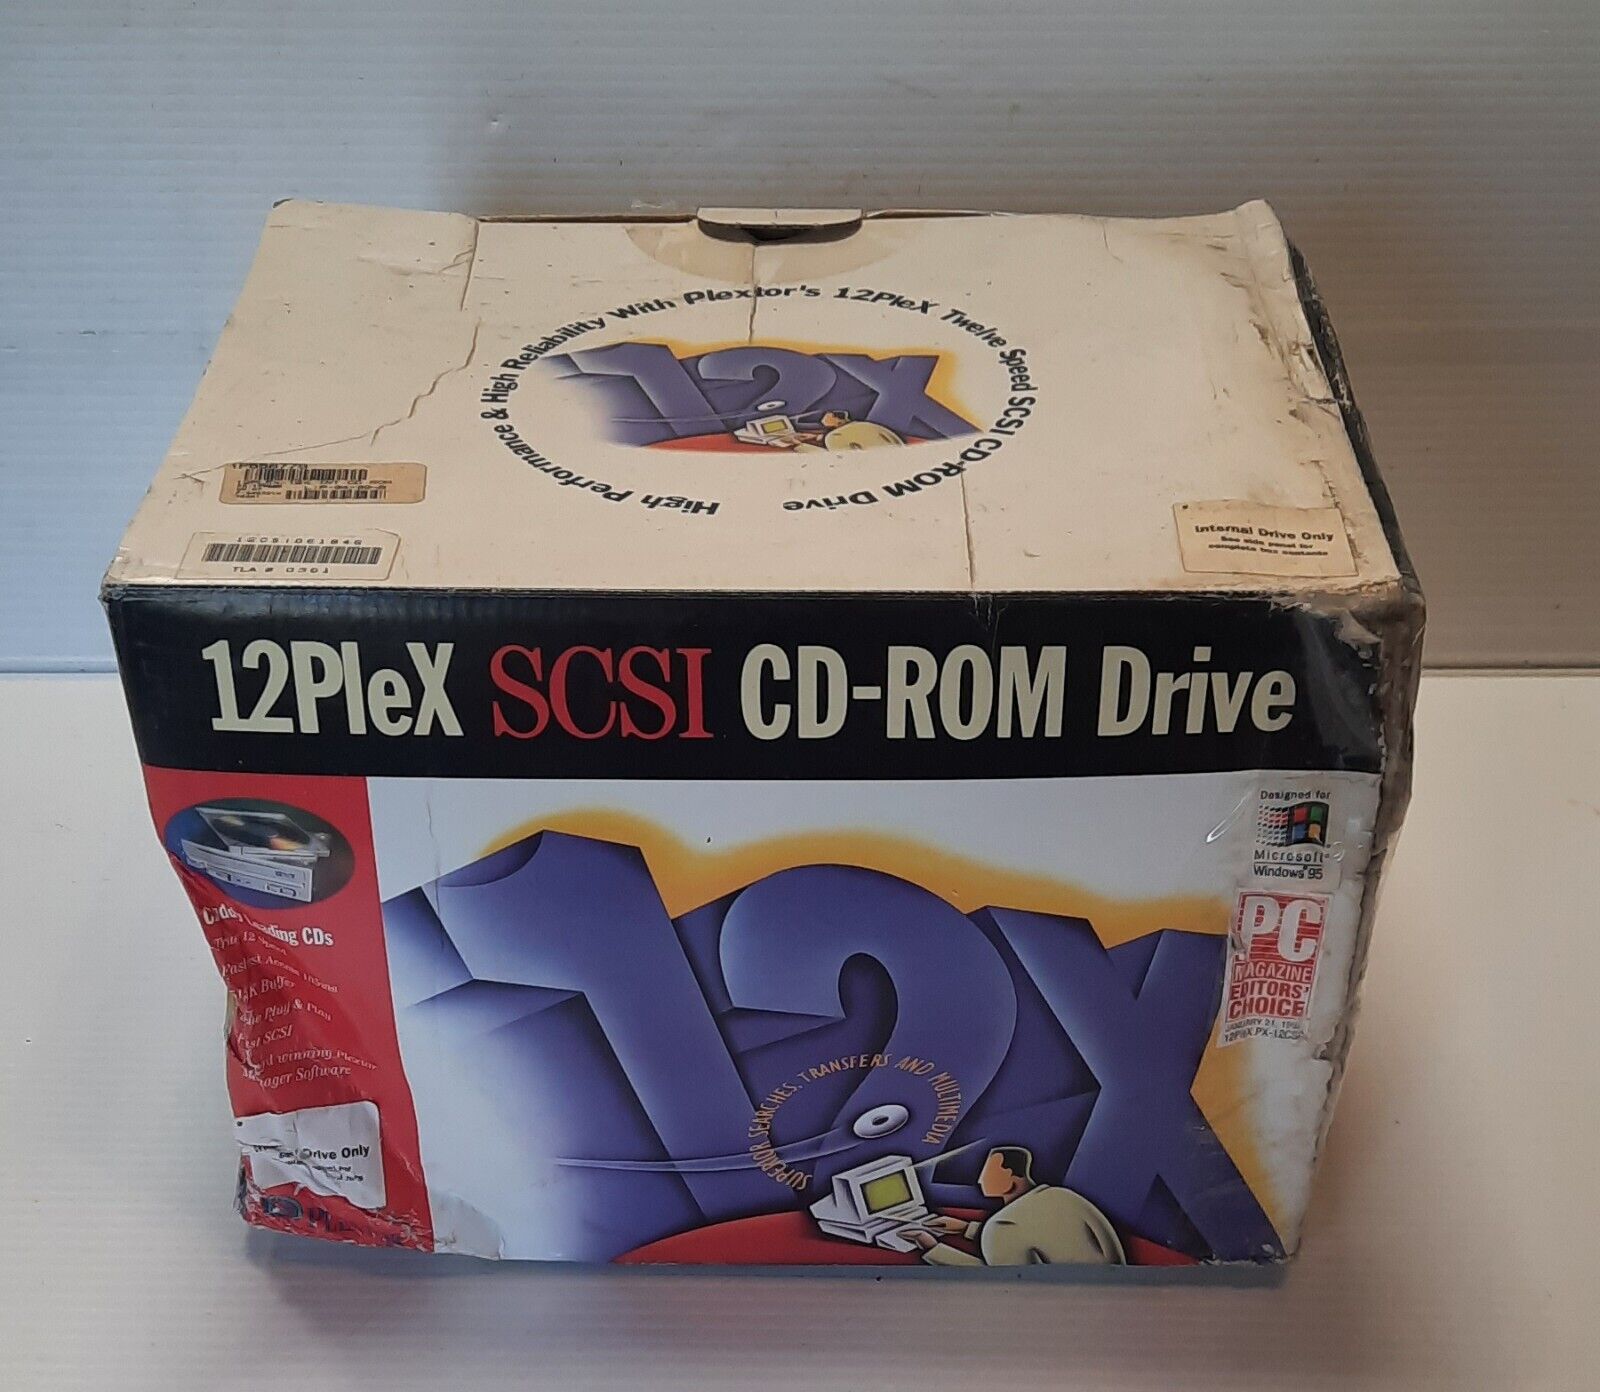 Plextor - New Open Box 12PleX CD-ROM SCSI Drive, New Old Stock